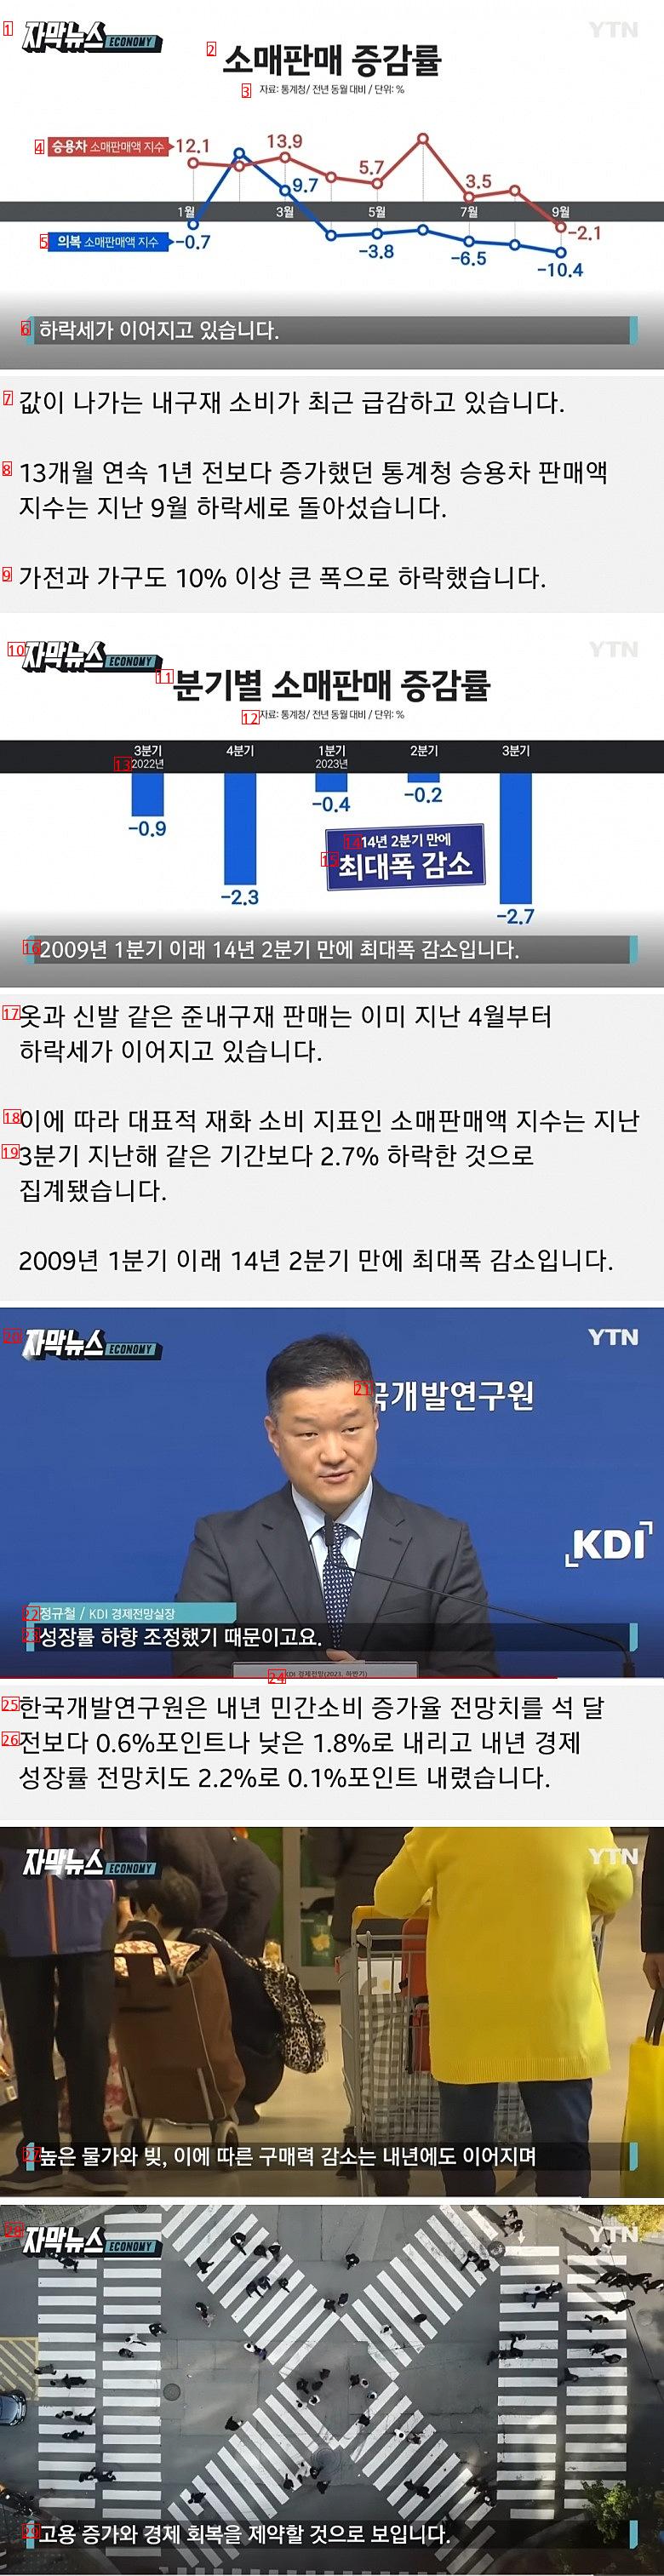 ●家具や服を買うお金がない=借金に苦しむ韓国経済